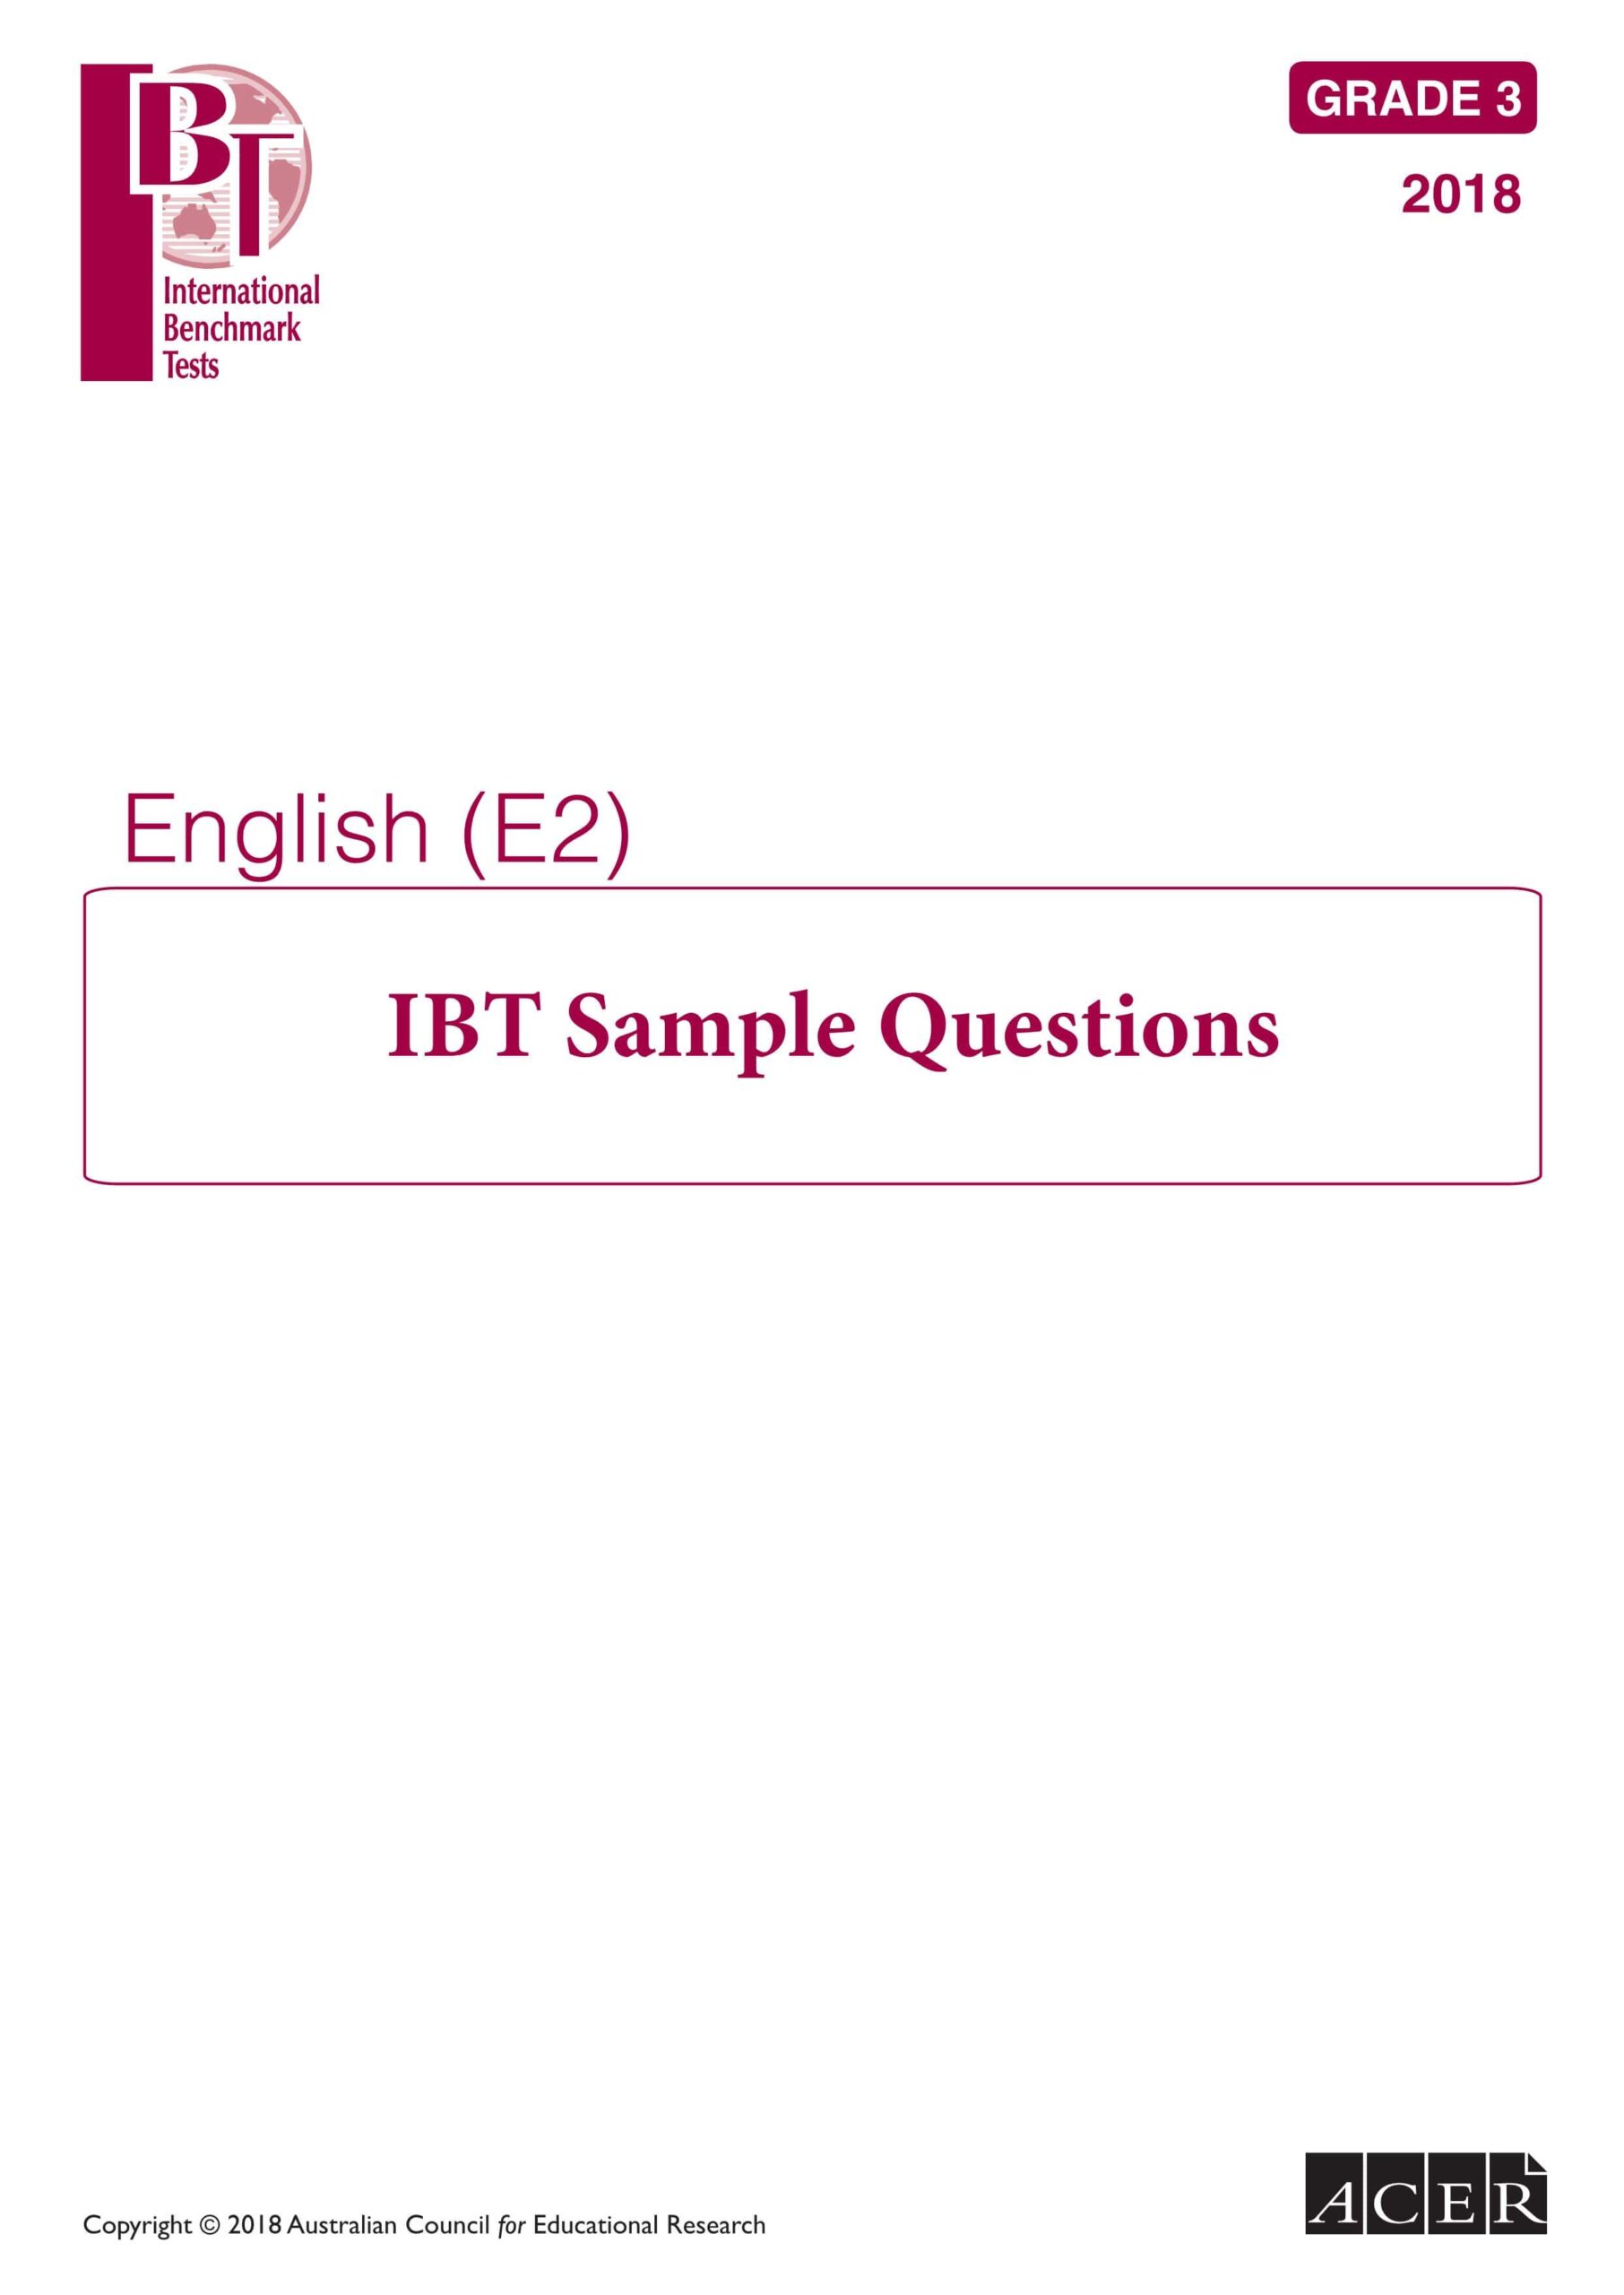 أوراق عمل تدريبة International Benchmark Tests اللغة الإنجليزية الصف الثالث 